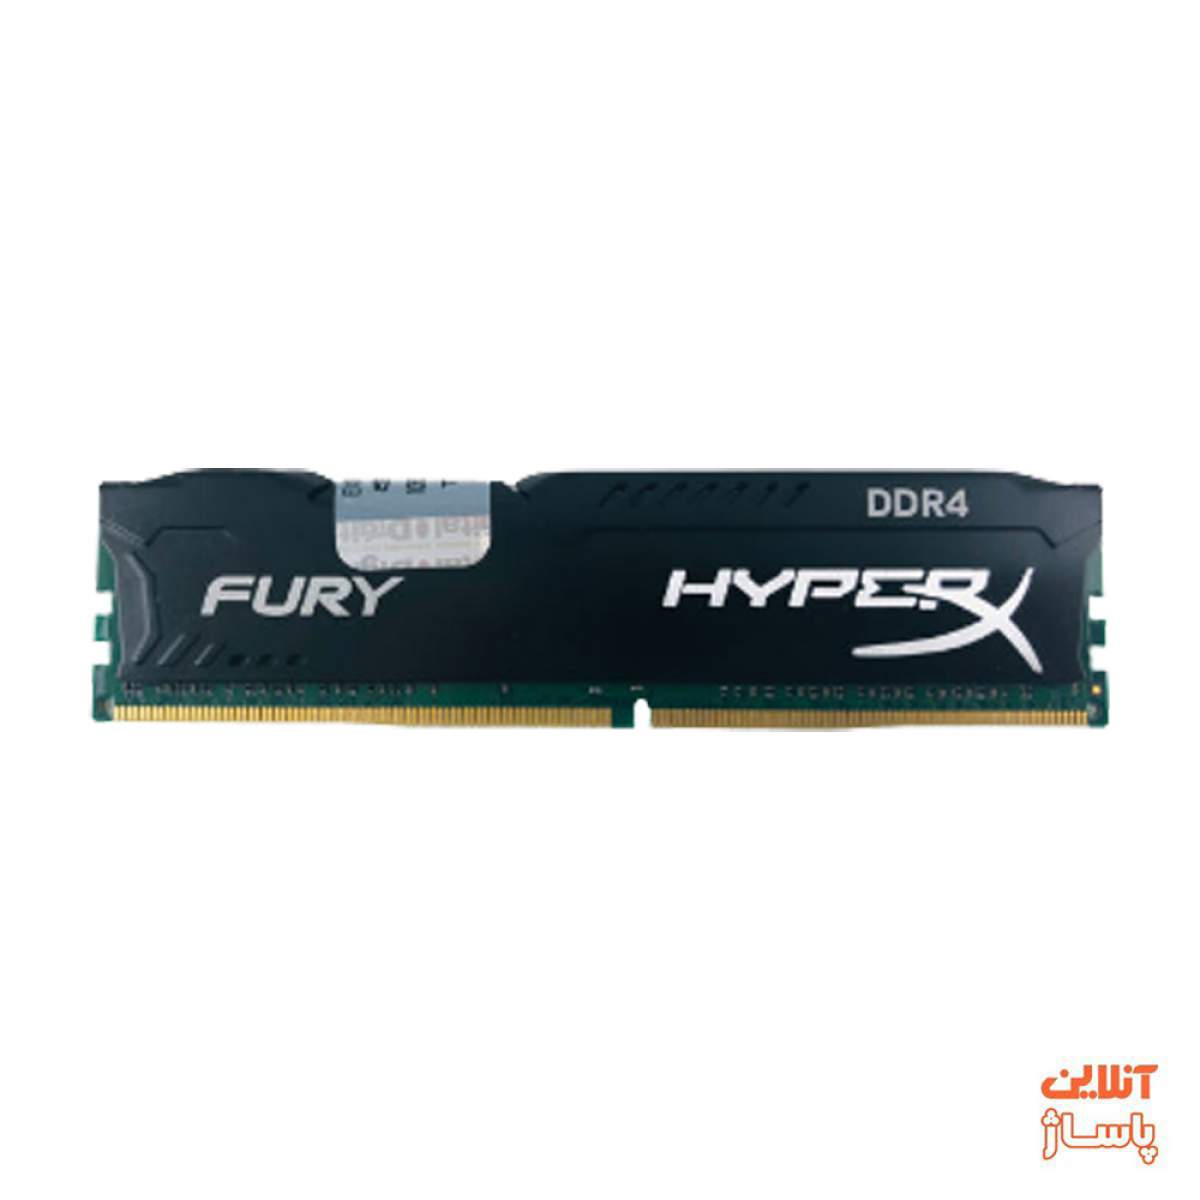  رم دسکتاپ DDR4 تک کاناله 2400 مگاهرتز CL15 کینگستون مدل HyperX Fury ظرفیت 16 گیگابایت